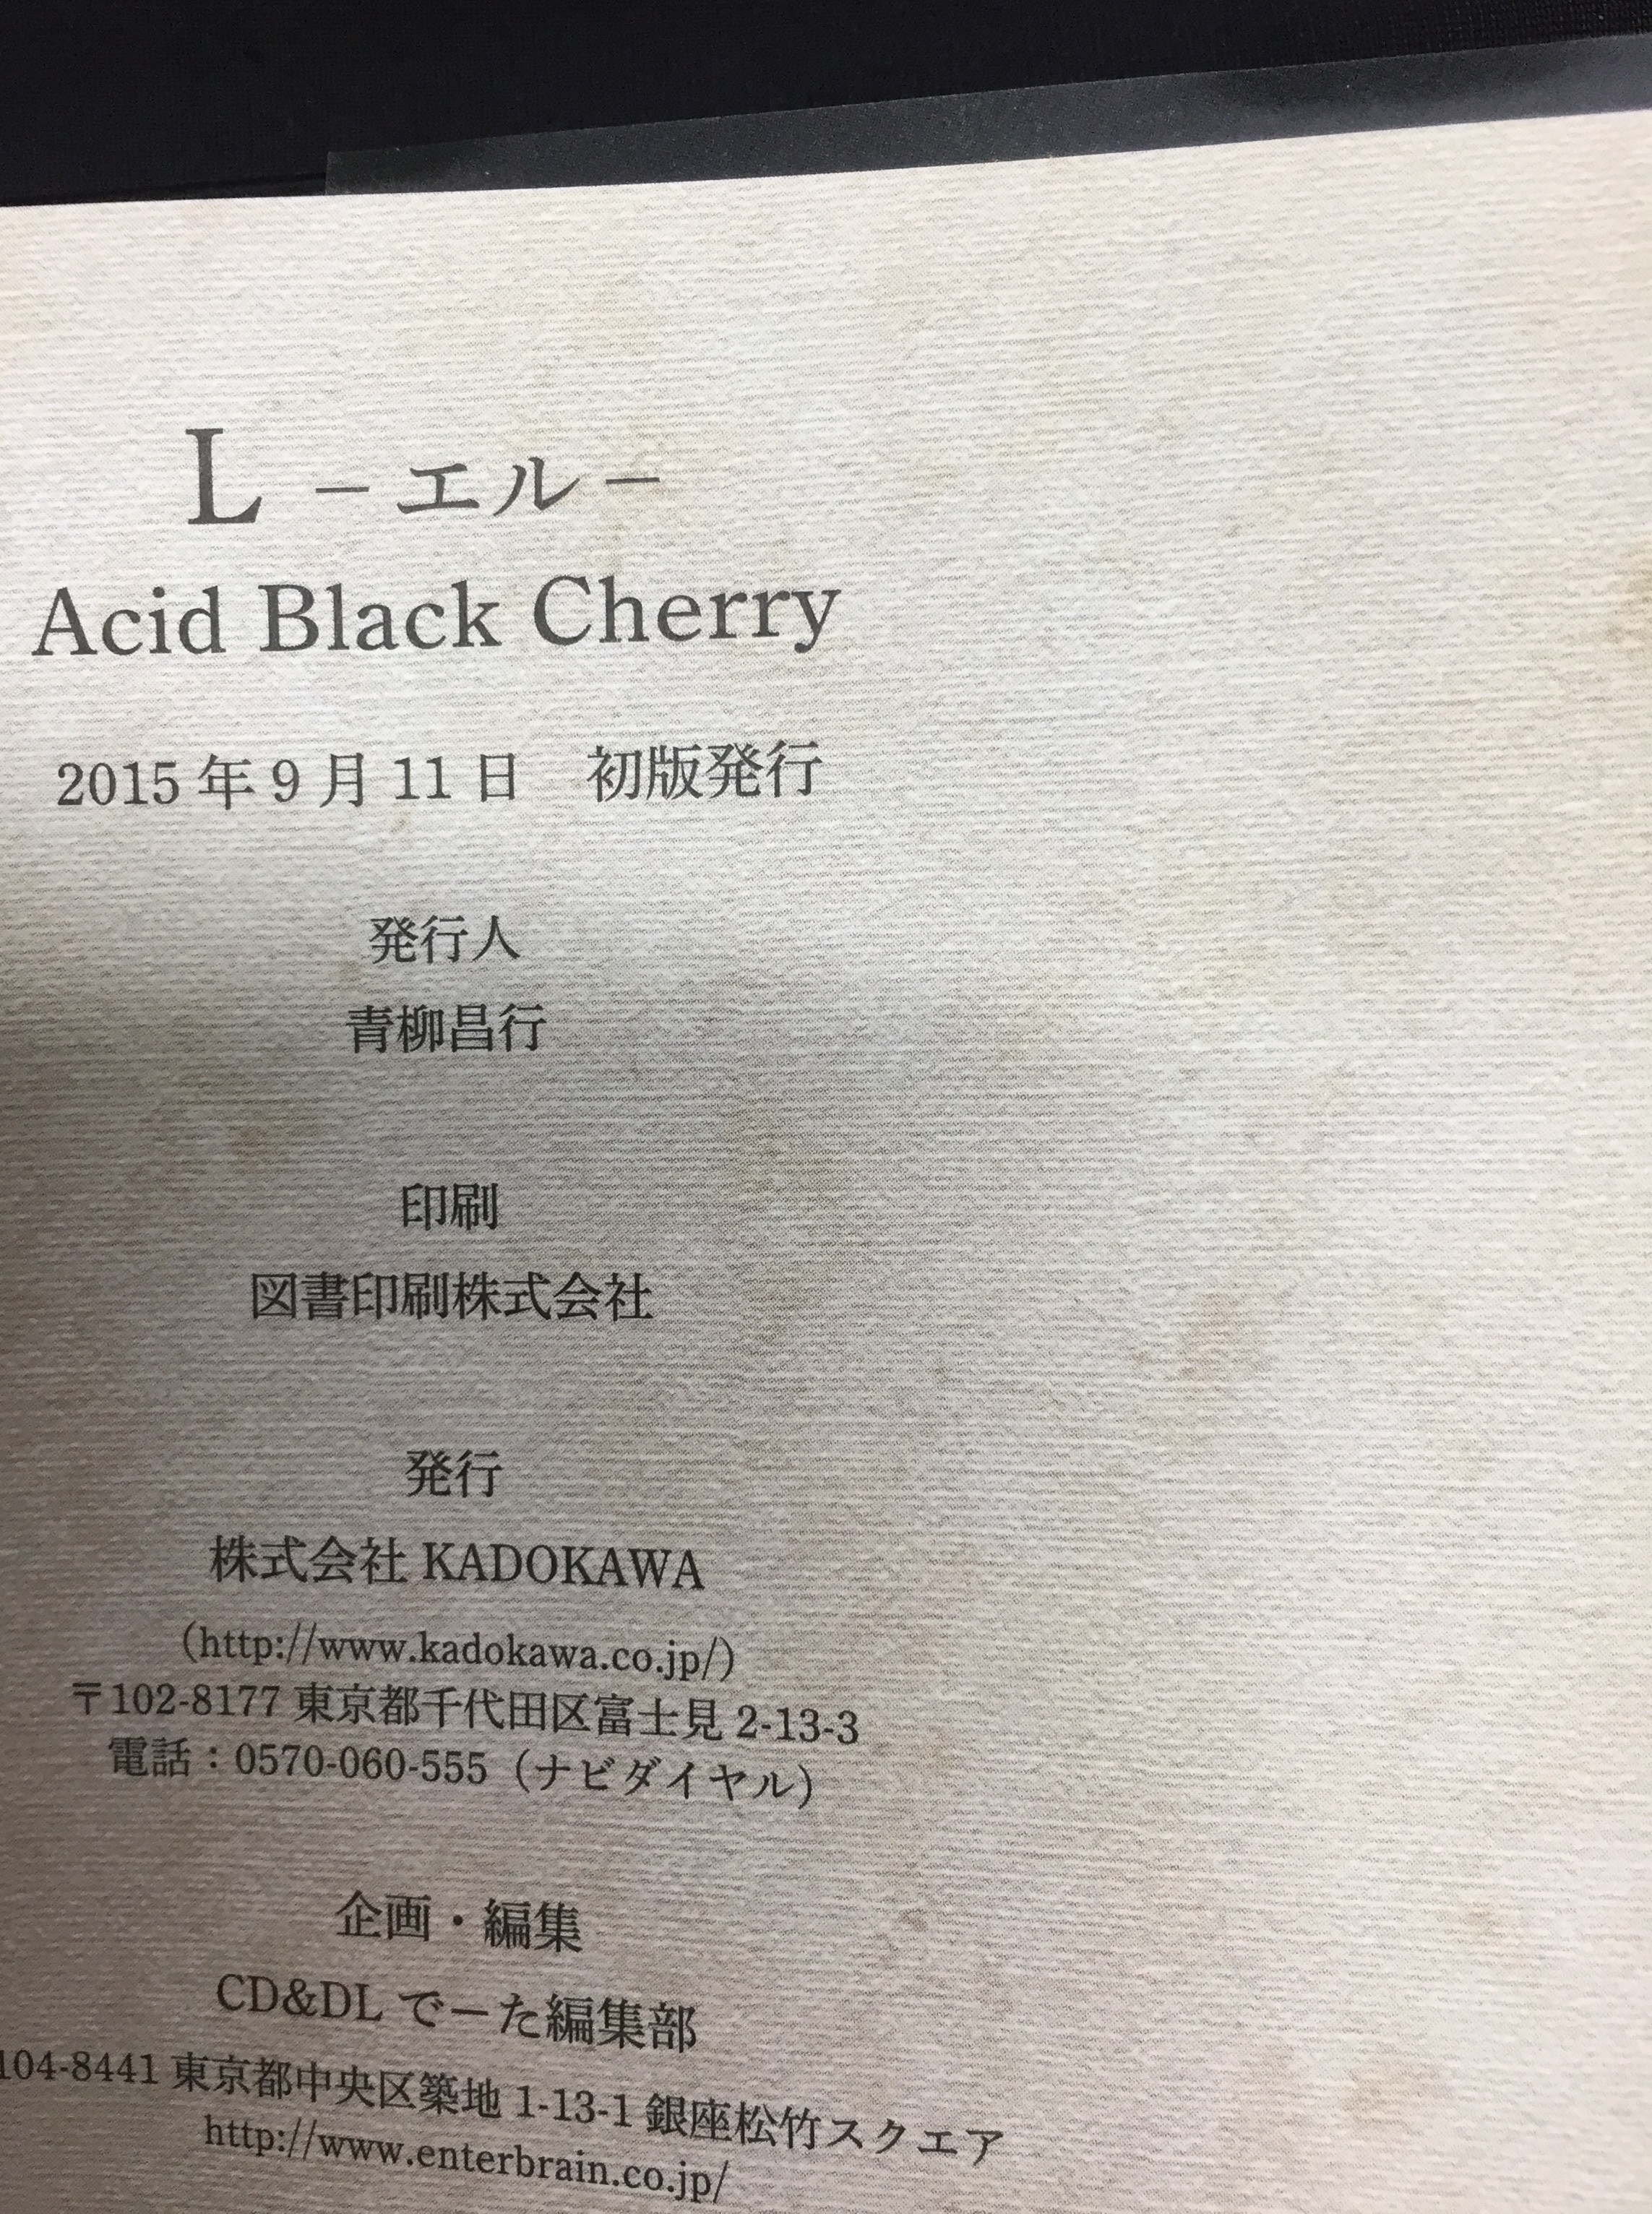 Acid Black Cherry 書籍 L-エル- | ありある | まんだらけ MANDARAKE